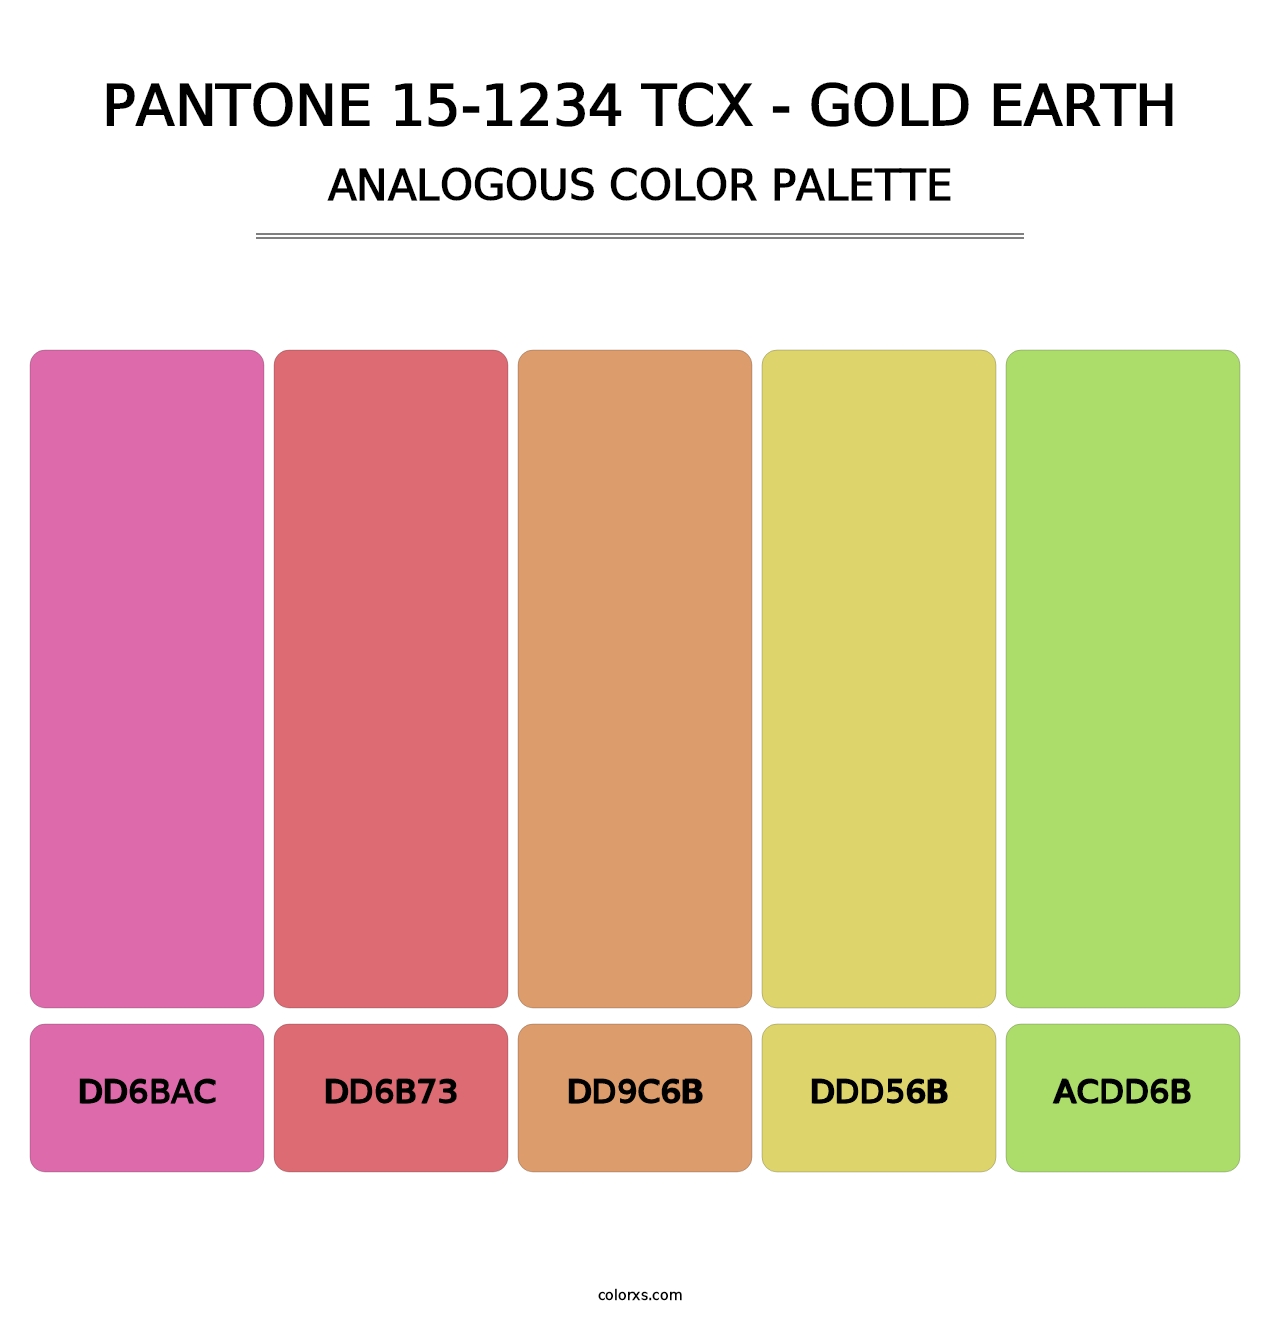 PANTONE 15-1234 TCX - Gold Earth - Analogous Color Palette